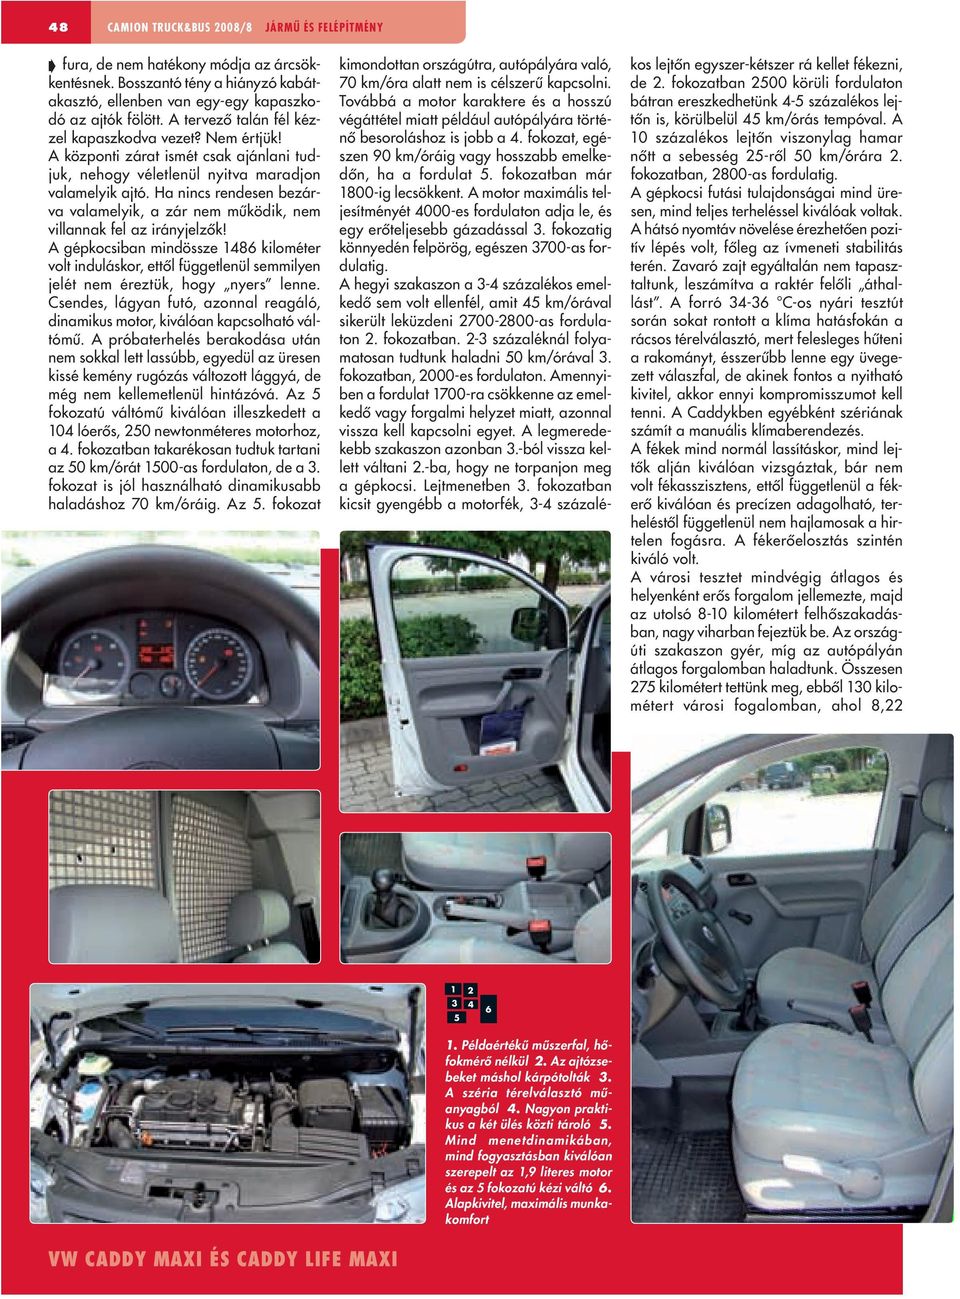 Volkswagen Caddy Maxi - PDF Ingyenes letöltés